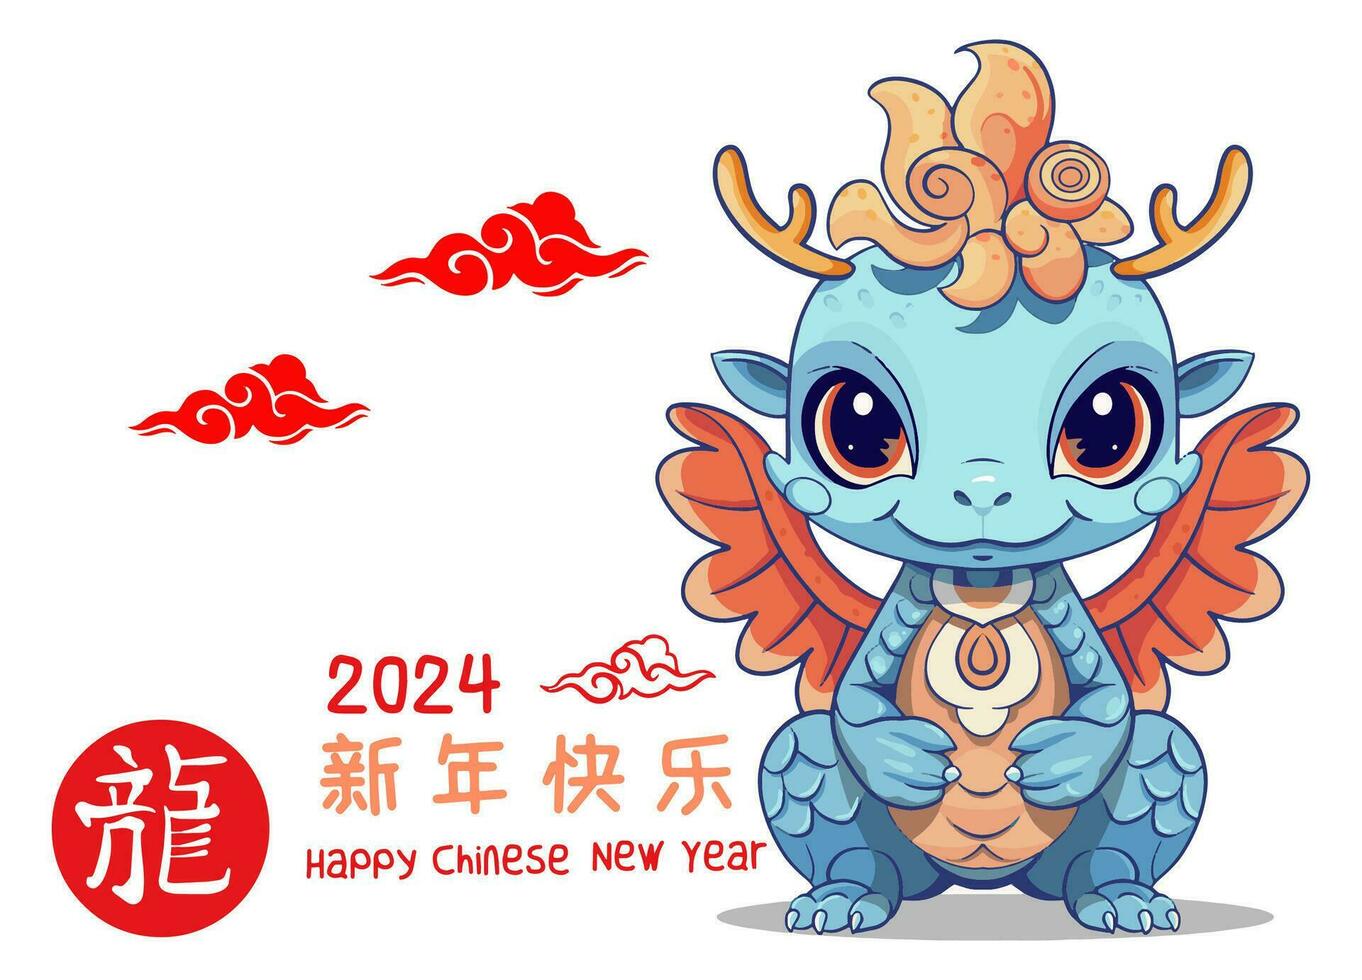 contento chino nuevo año 2024 deseando usted alegría con un linda pequeño continuar vector